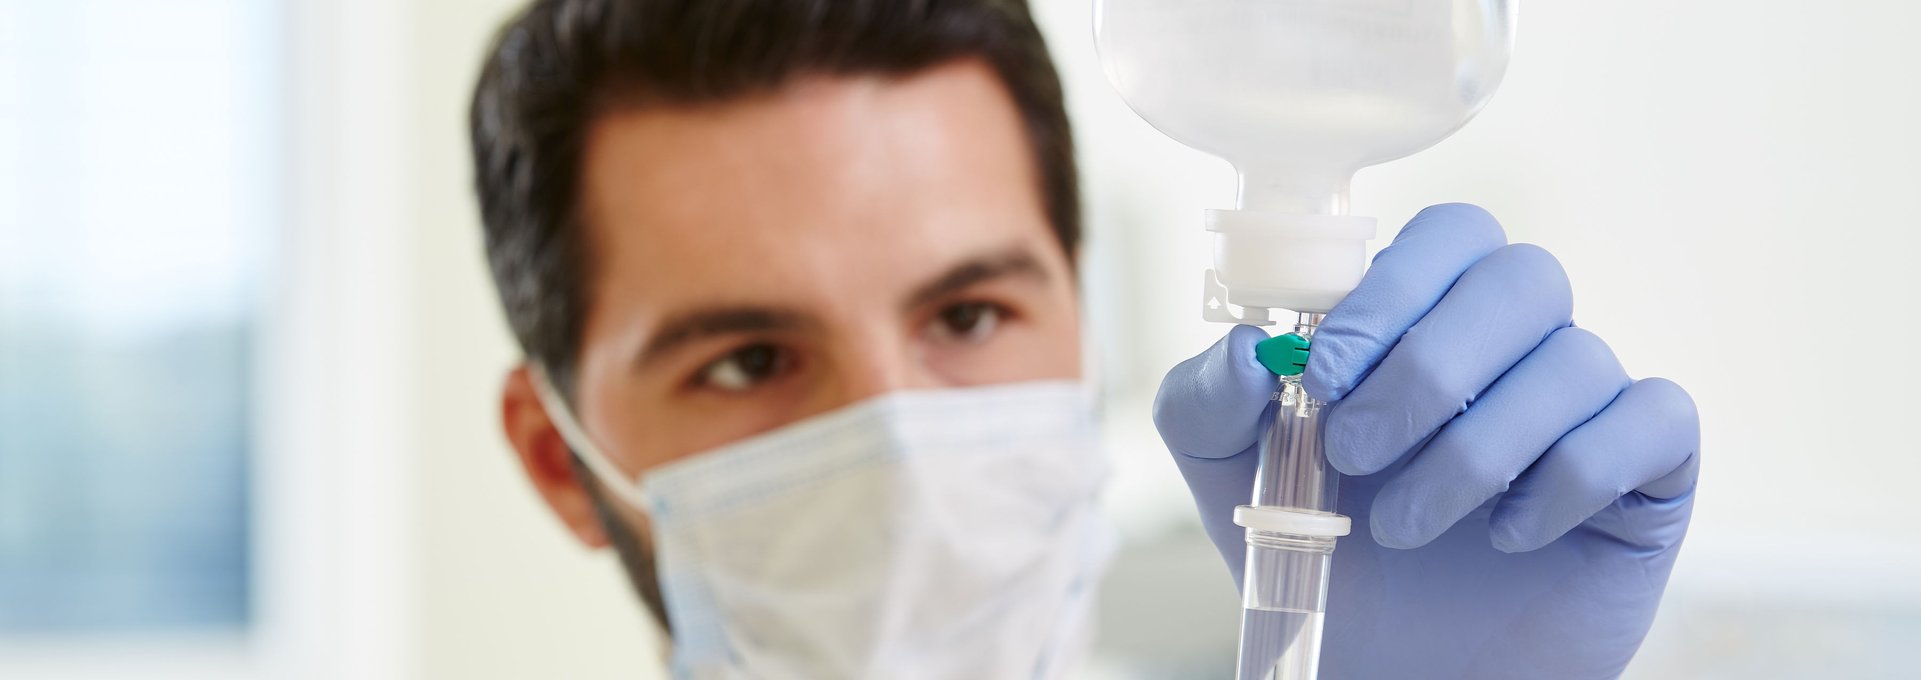 Das Foto zeigt einen jungen Mann bei einer pflegerischen Tätigkeit im Krankenhaus. Mit Mundschutz und Handschuhen stellt der die Fließrate an einem Tropf ein.